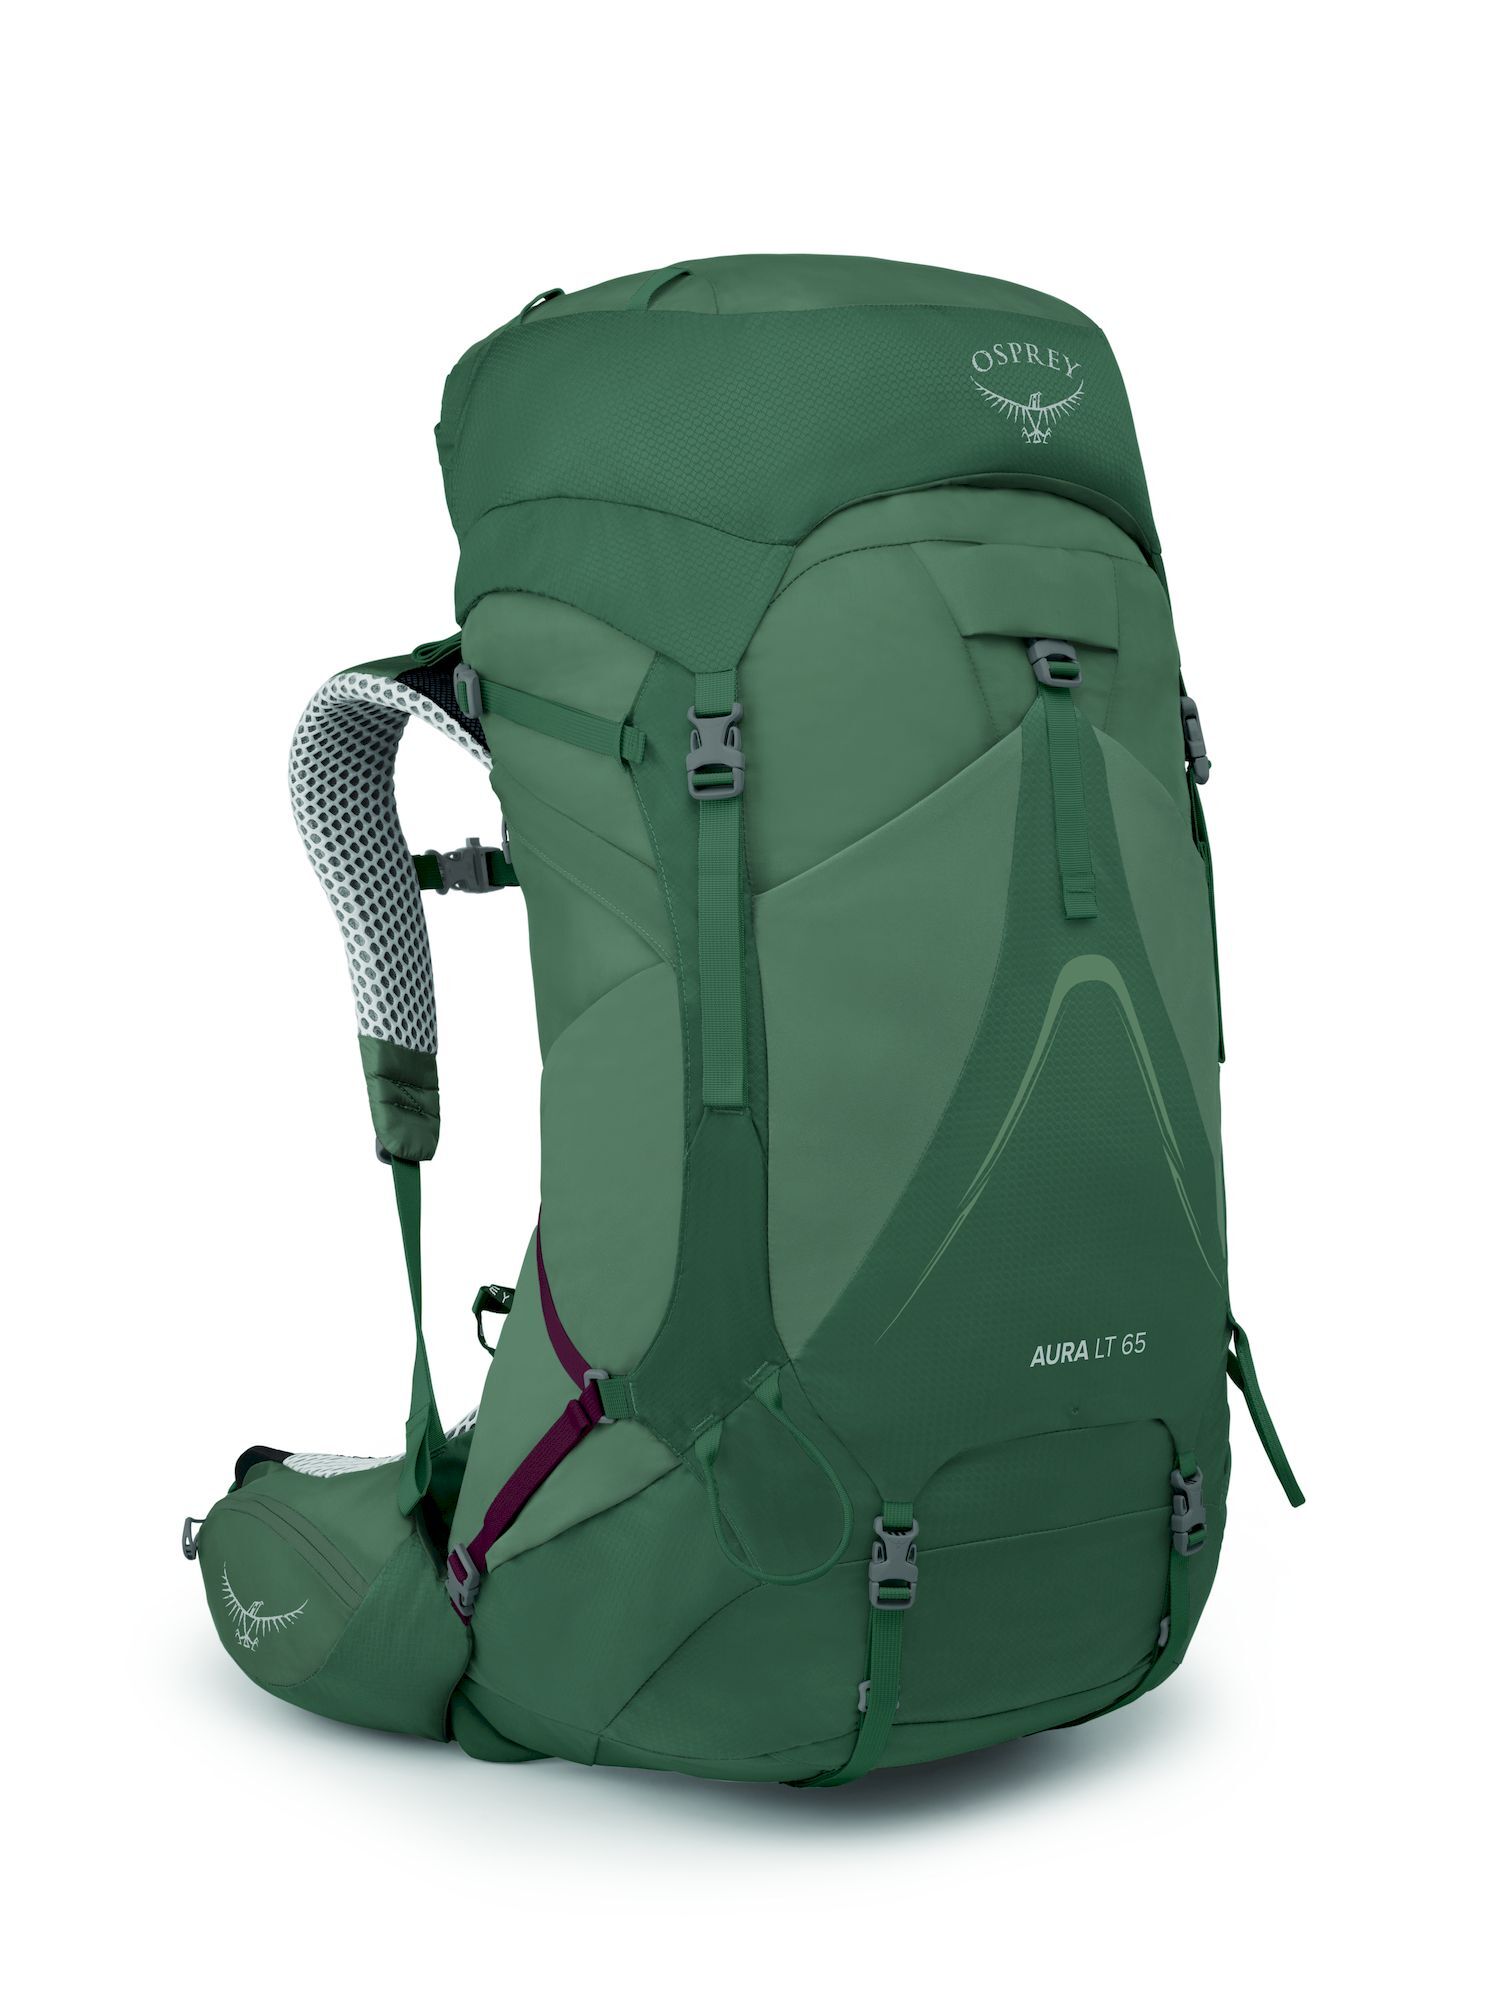 Osprey Aura AG LT 65 - Hiking backpack - Women's | Hardloop